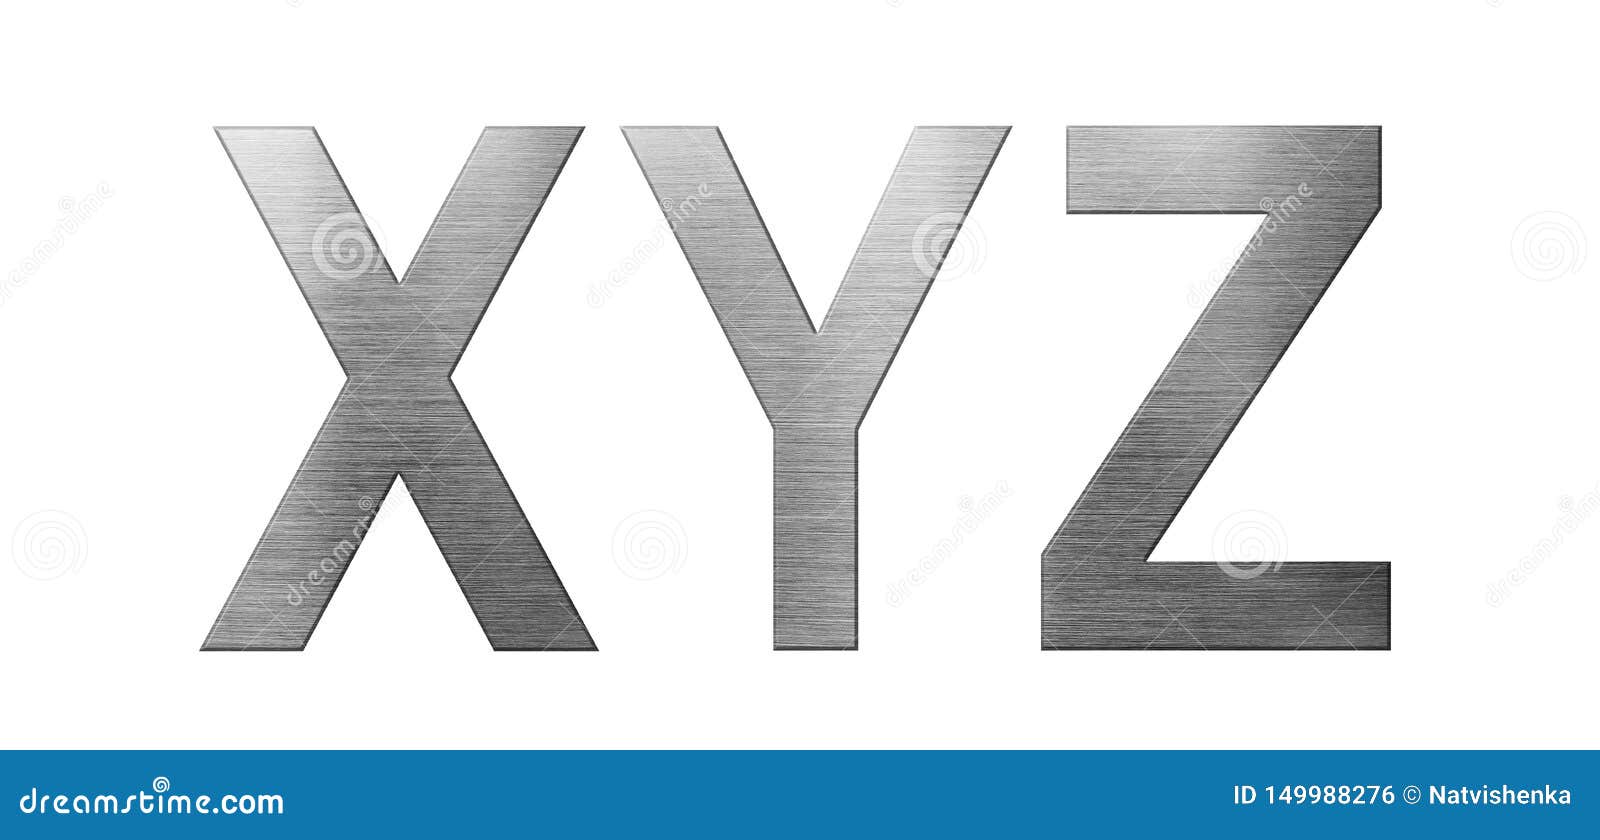 Xyz Stock Illustrations – 239 Xyz Stock Illustrations, Vectors ...